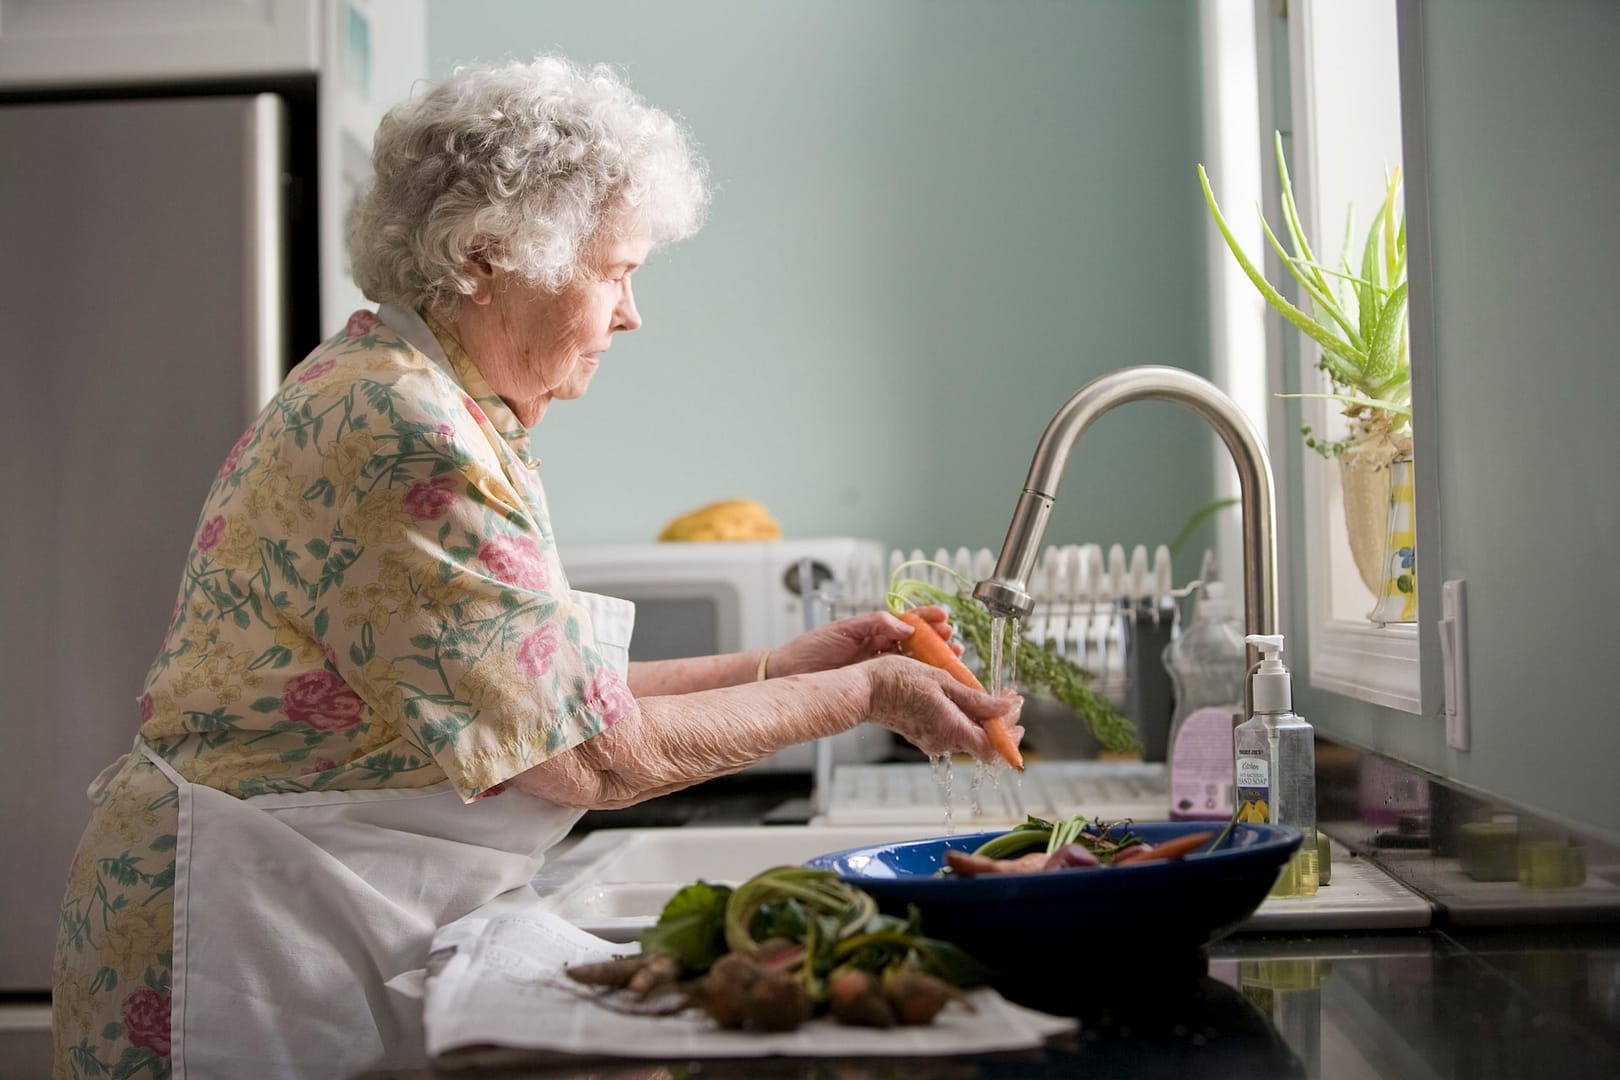 An elderly person in a kitchen